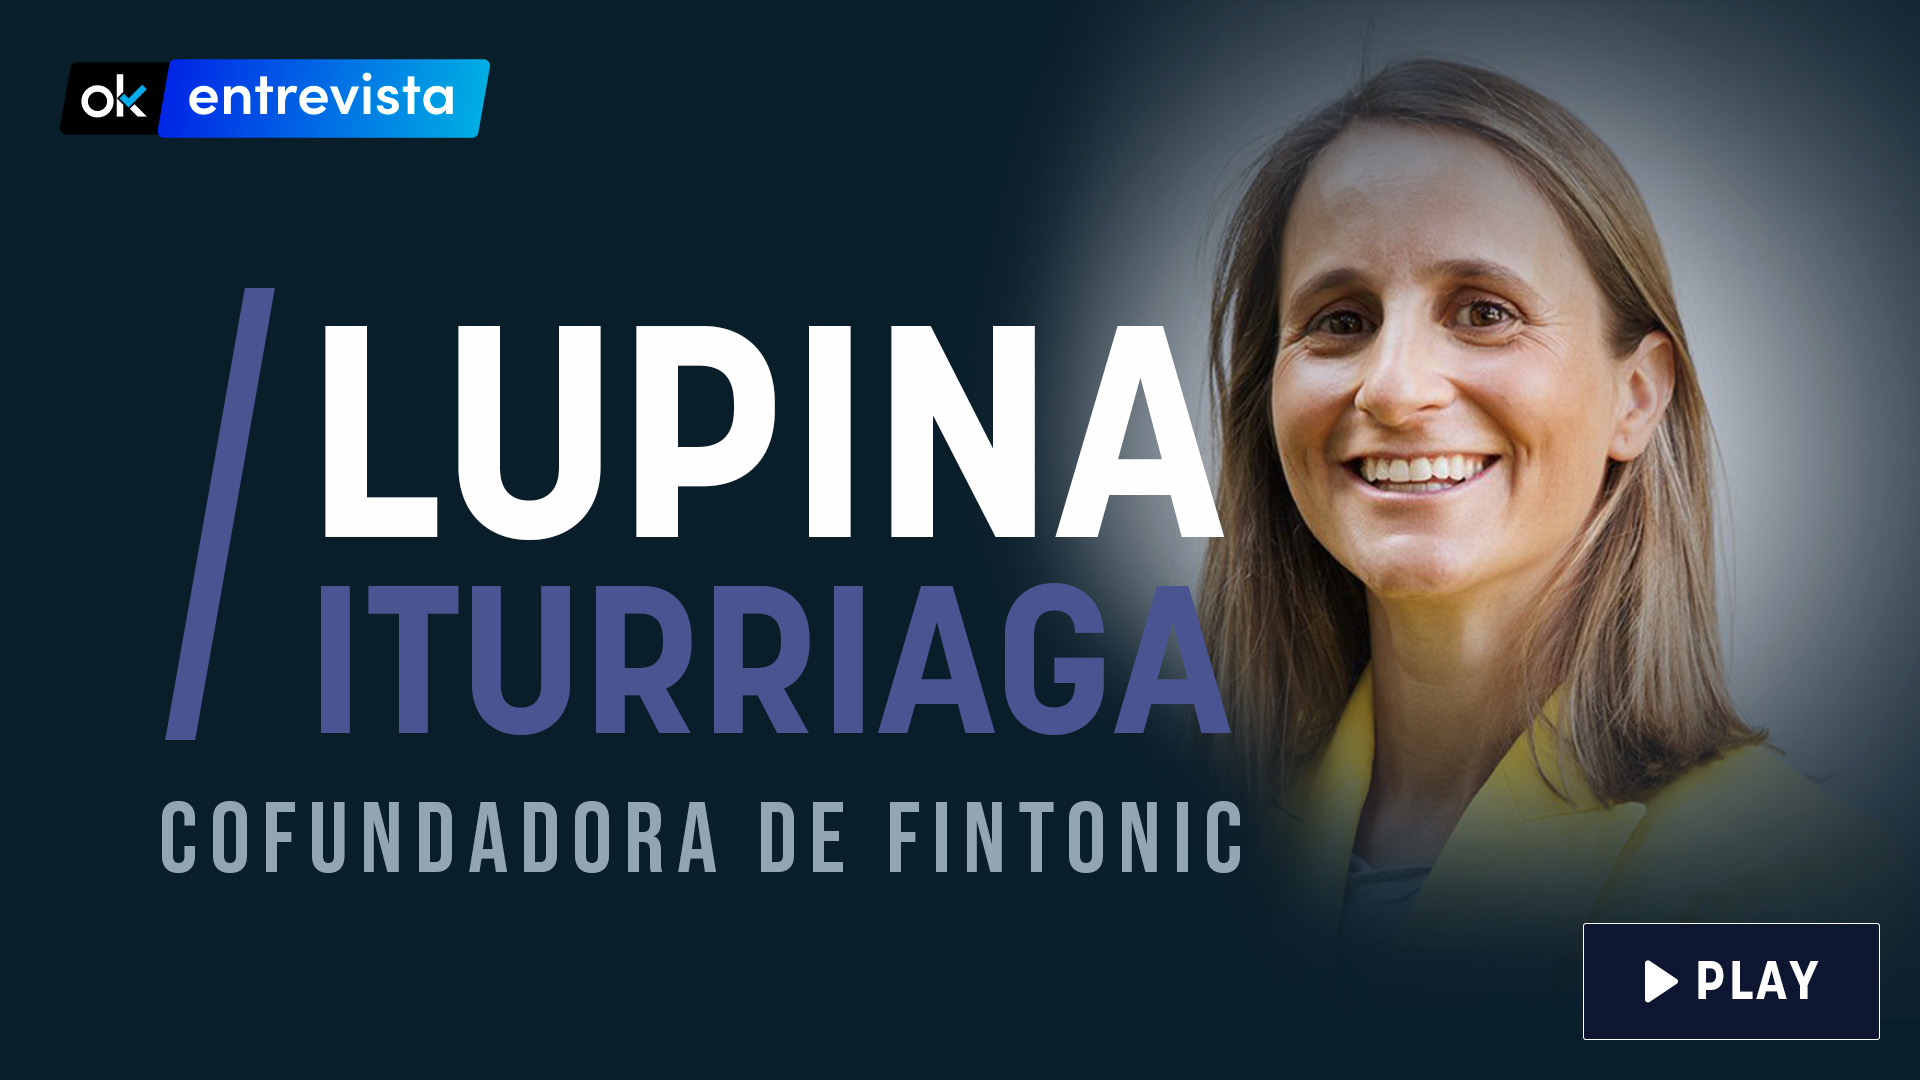 La cofundadora de Fintonic, Lupina Iturriaga, habla sobre emprendimiento y su nueva línea de servicios a grandes empresas